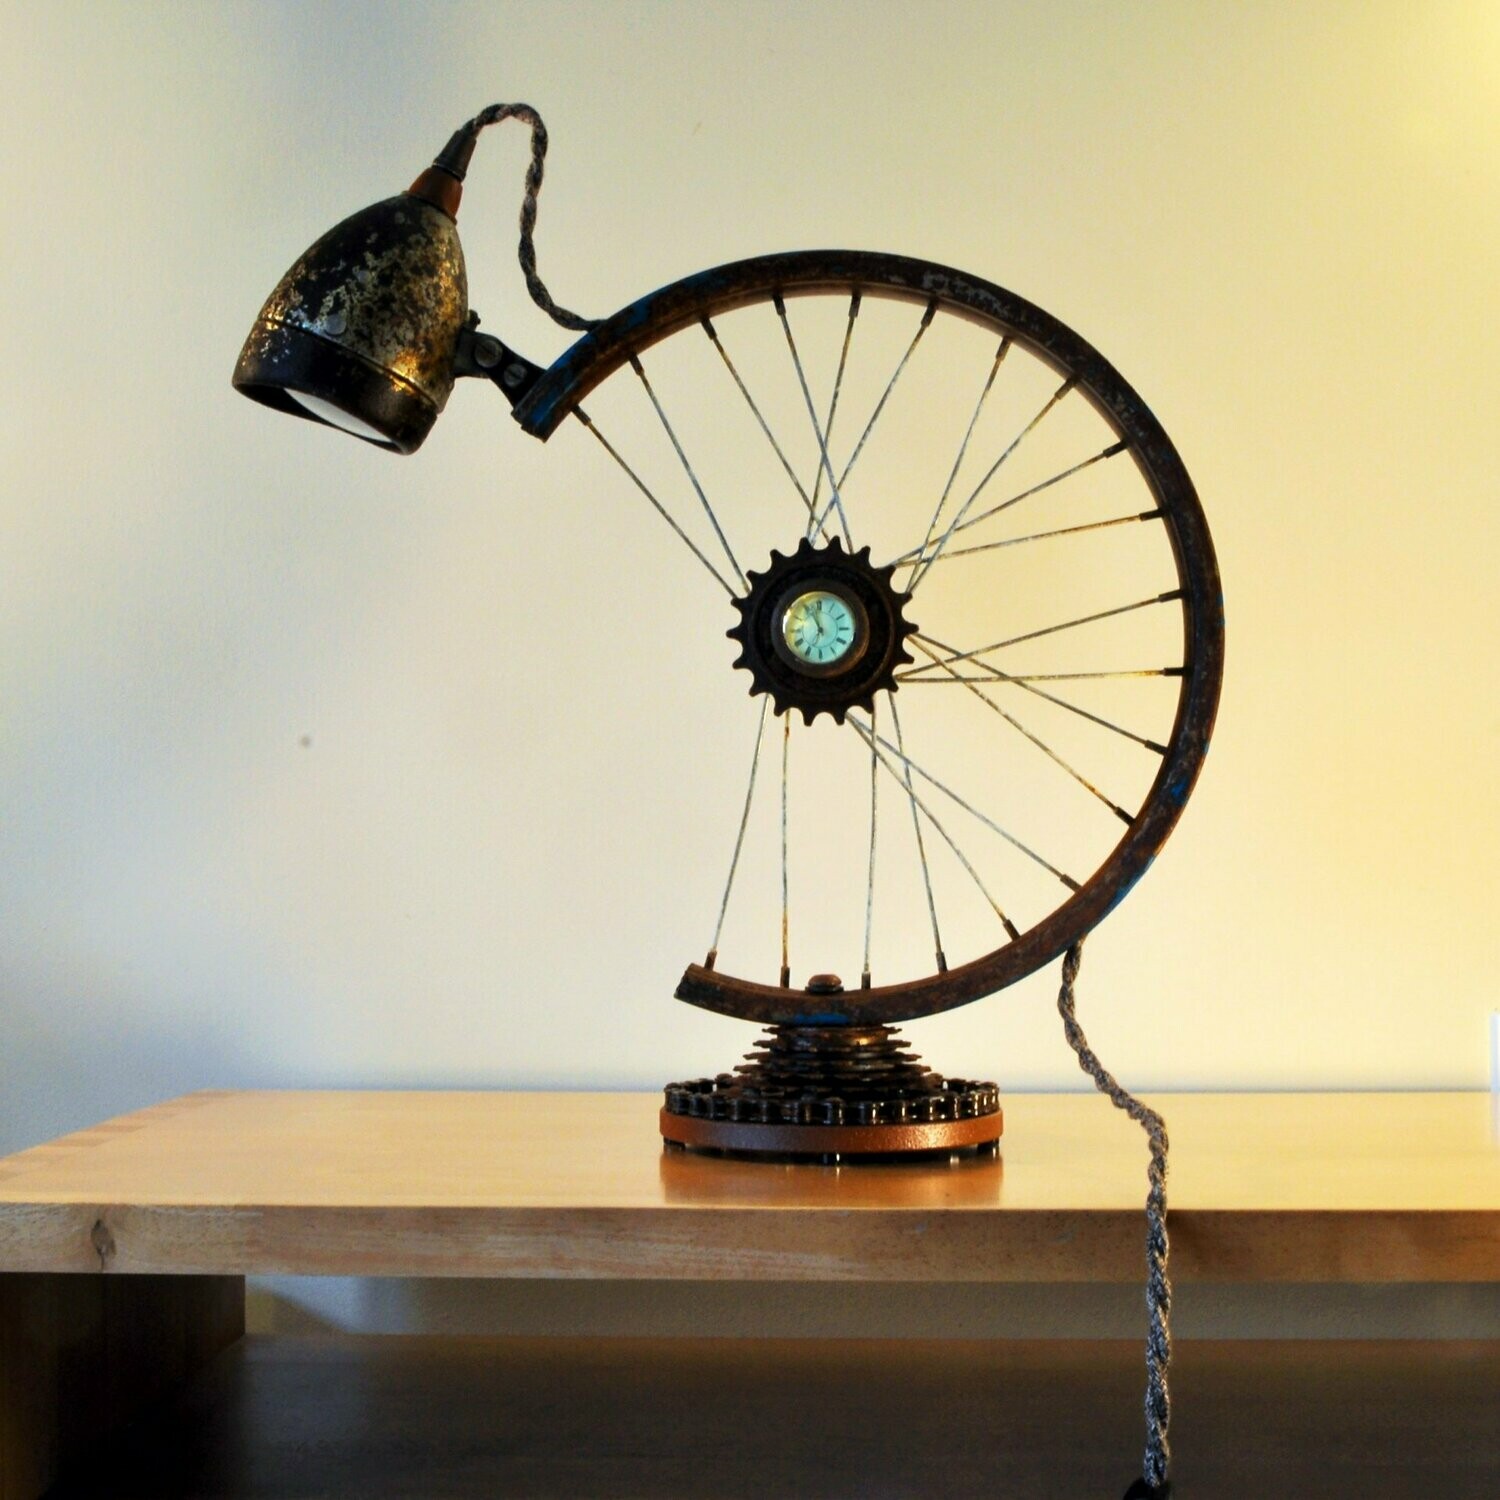 lampada da tavolo con orologio, vintage stile industriale